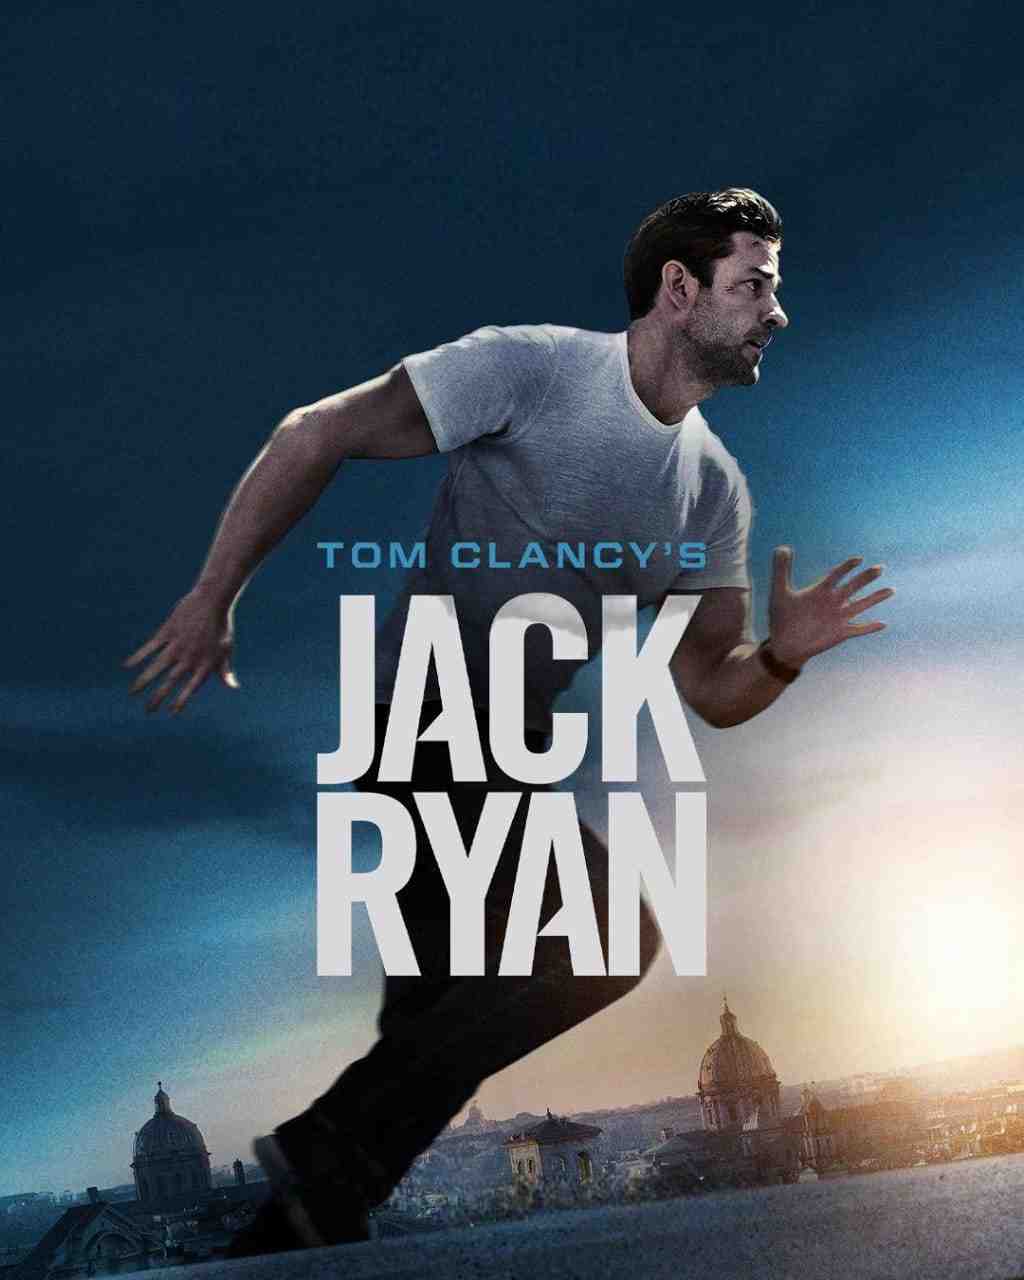 Tom Clancy's Jack Ryan Web Series Download